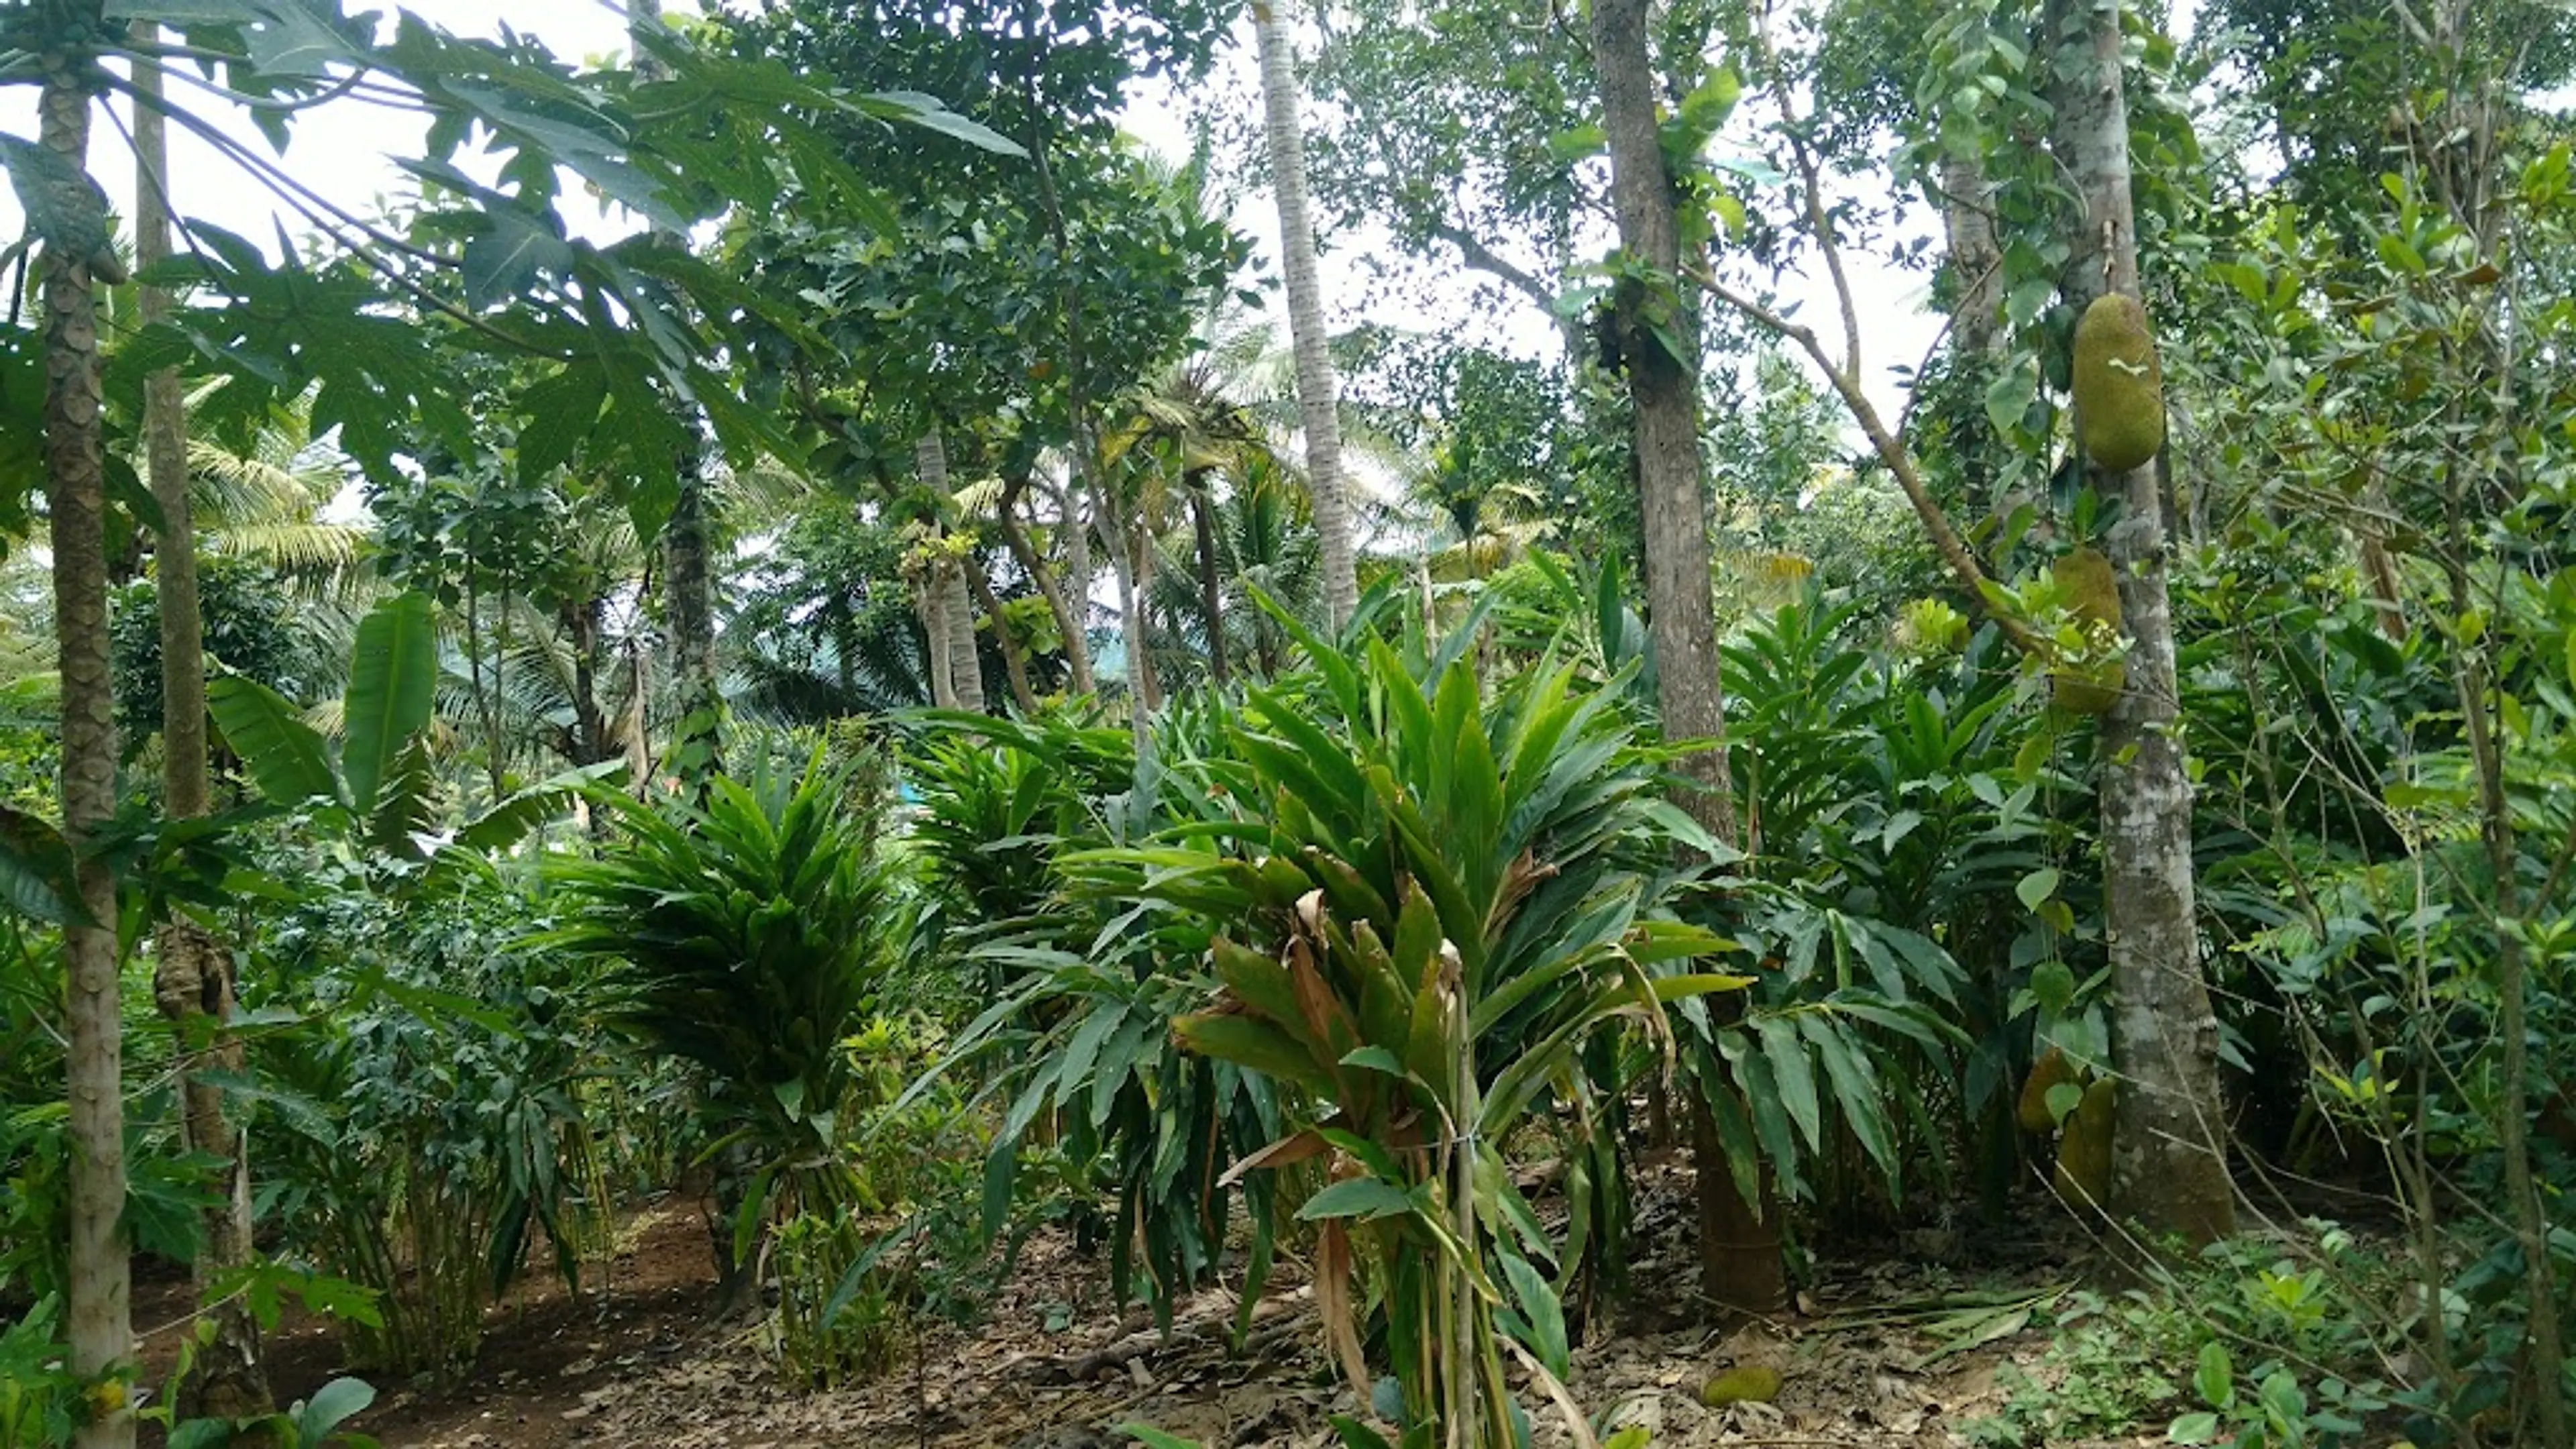 Spice plantation in Thekkady